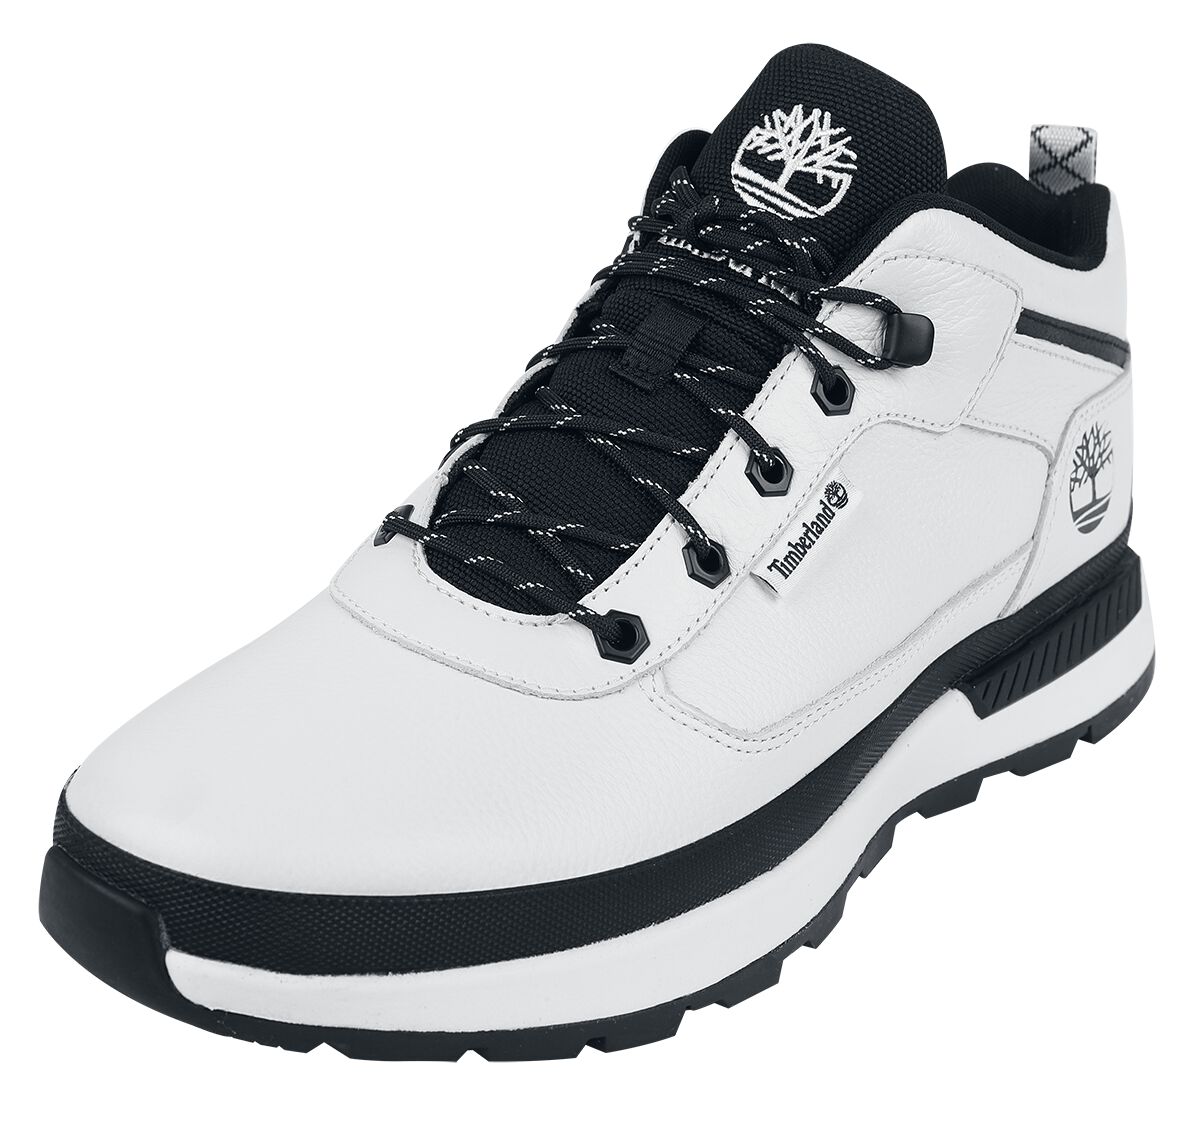 Timberland Sneaker - Field Trekker Mid Lace Up - EU41 bis EU46 - für Männer - Größe EU42 - weiß